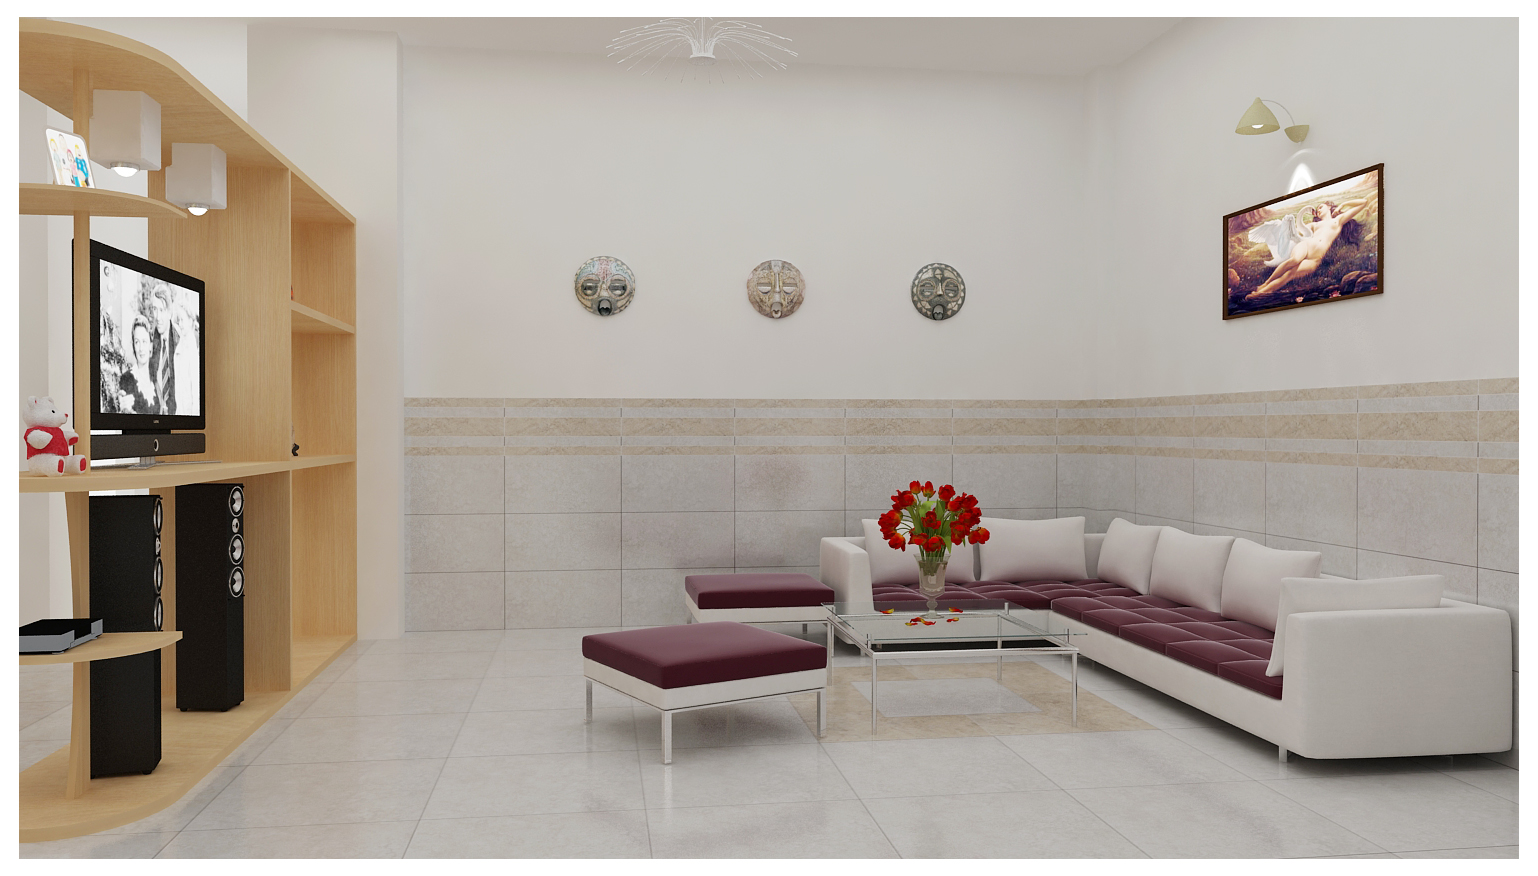 Gạch ốp tường phòng khách sang trọng đã trở thành xu hướng trong thiết kế nội thất. Với sự kết hợp hoàn hảo giữa màu sắc, chất liệu và kiểu dáng, việc sử dụng loại gạch này giúp tôn lên vẻ đẹp sang trọng, hiện đại cho không gian sống của bạn. Hãy cùng khám phá những mẫu gạch ốp tường phòng khách đẳng cấp tại đây!